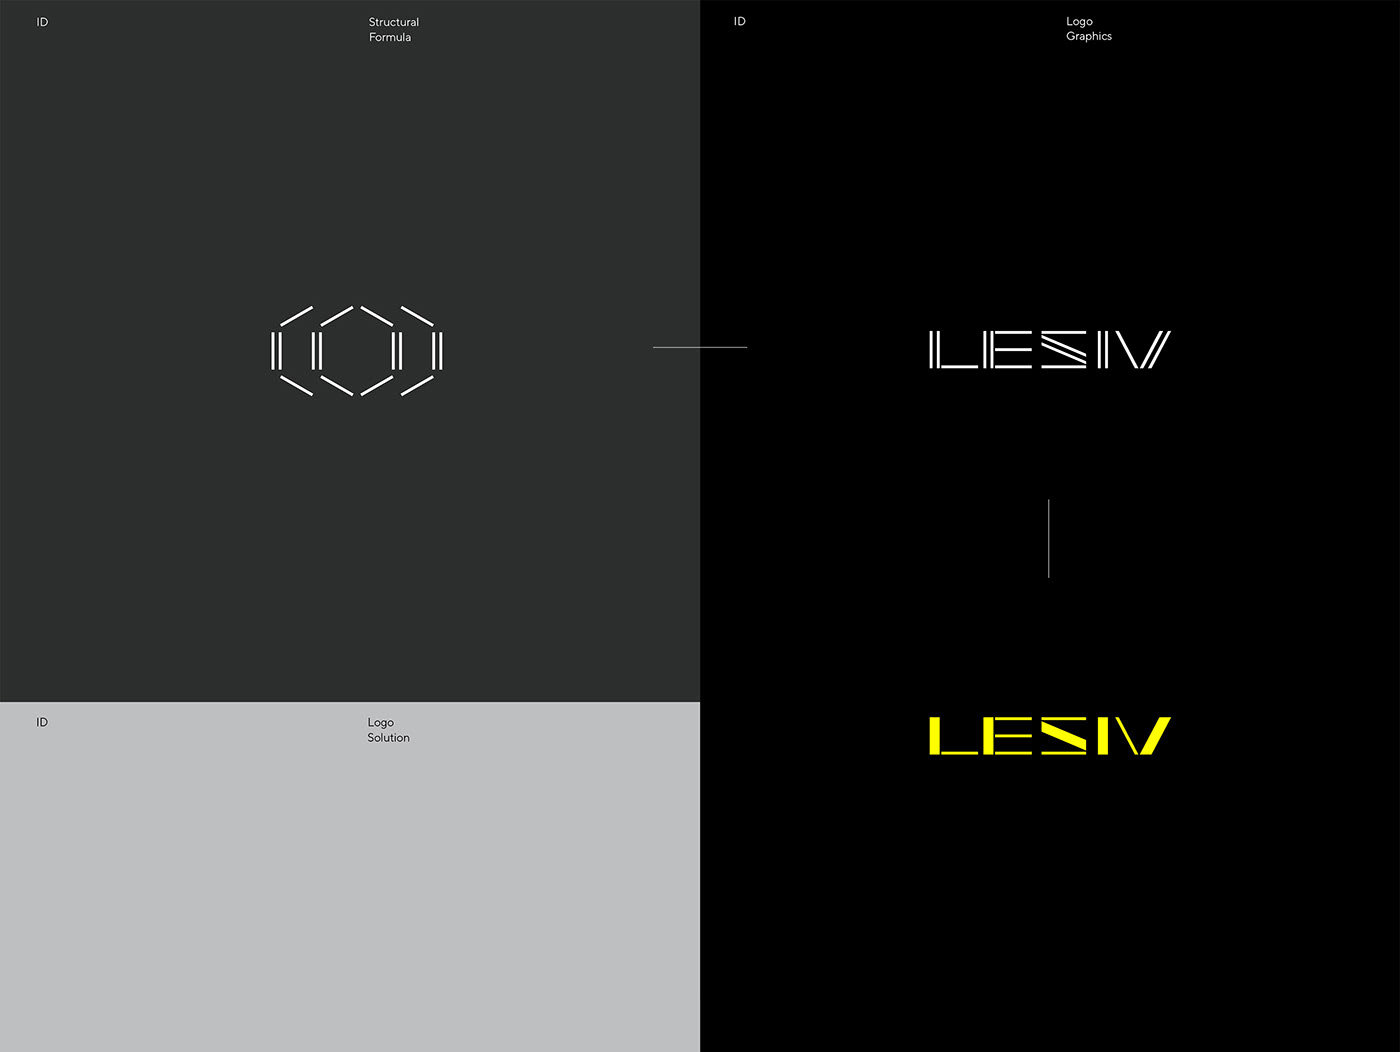 brand identity chemistry design identity lesiv Logo Design Logotype science Technology visual identity